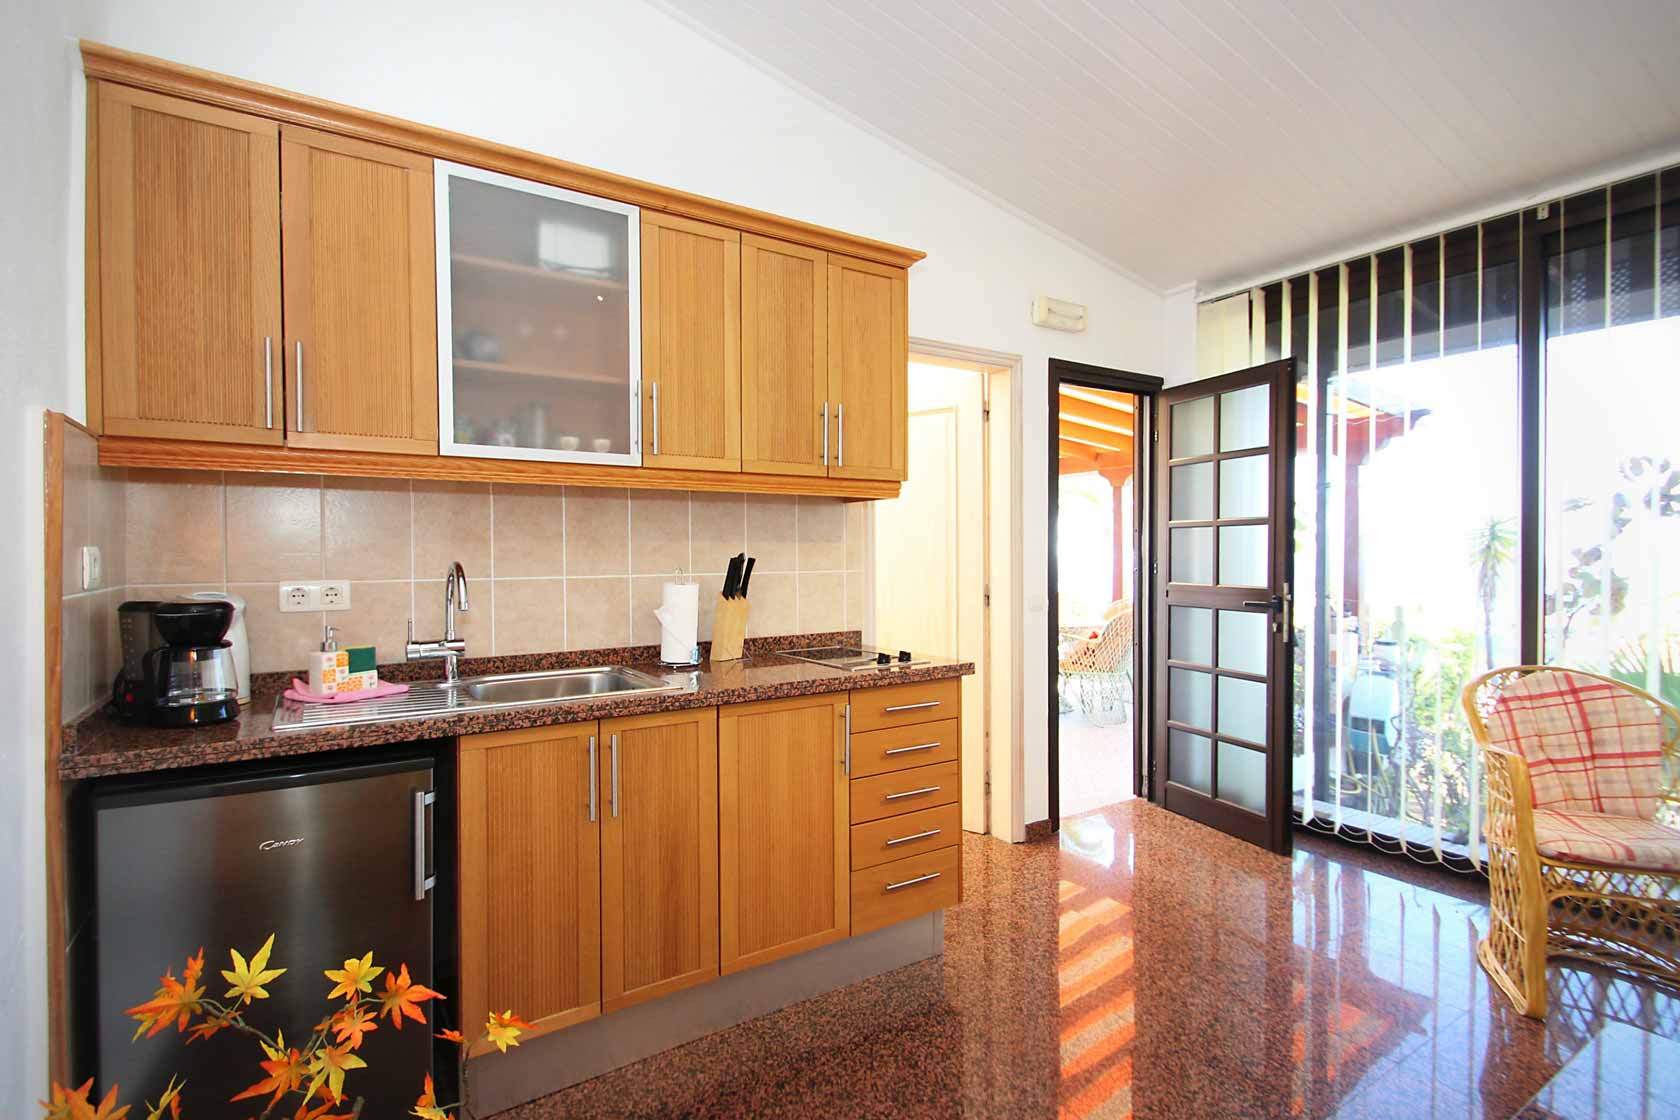 Der Wohnbereich hat eine integrierte kleine Küchenzeile. Grill und eine Paella-Pfanne finden Sie auf der Terrasse